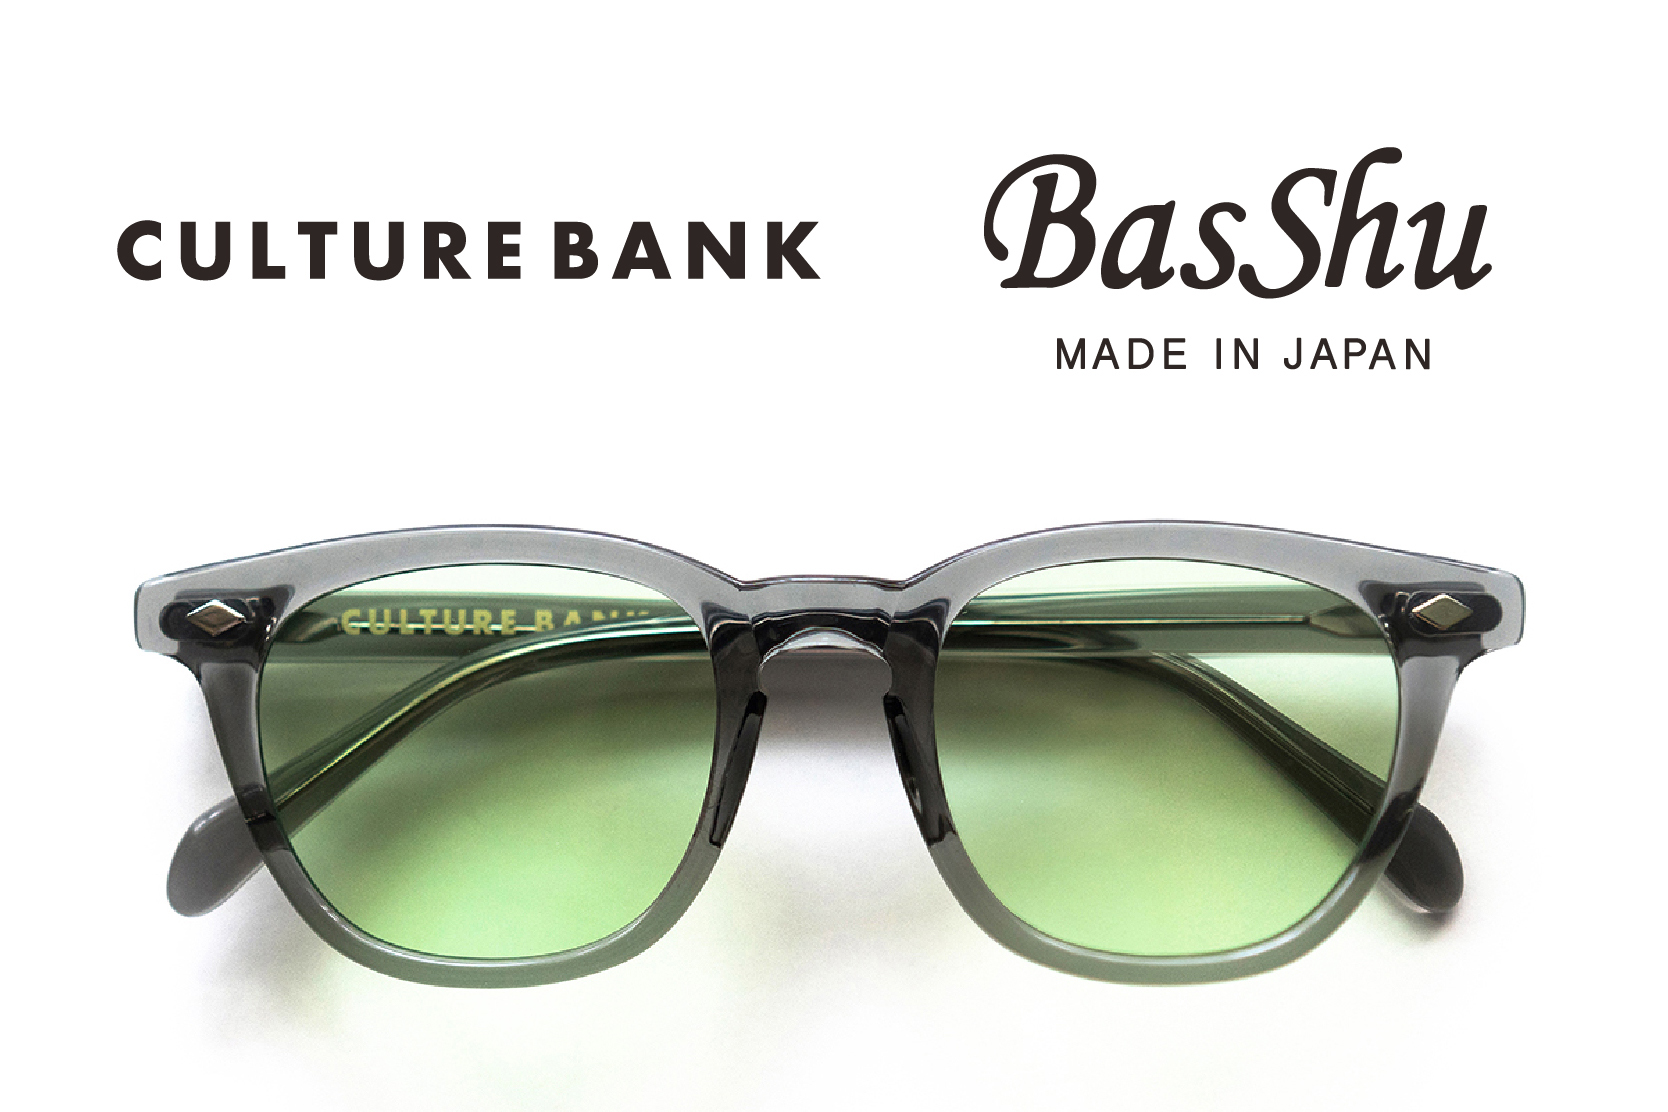 目黒区『basshu』ストアにて『culture Bank』のヴィンテージgi Glassesを展示販売｜株式会社ウーリーのプレスリリース